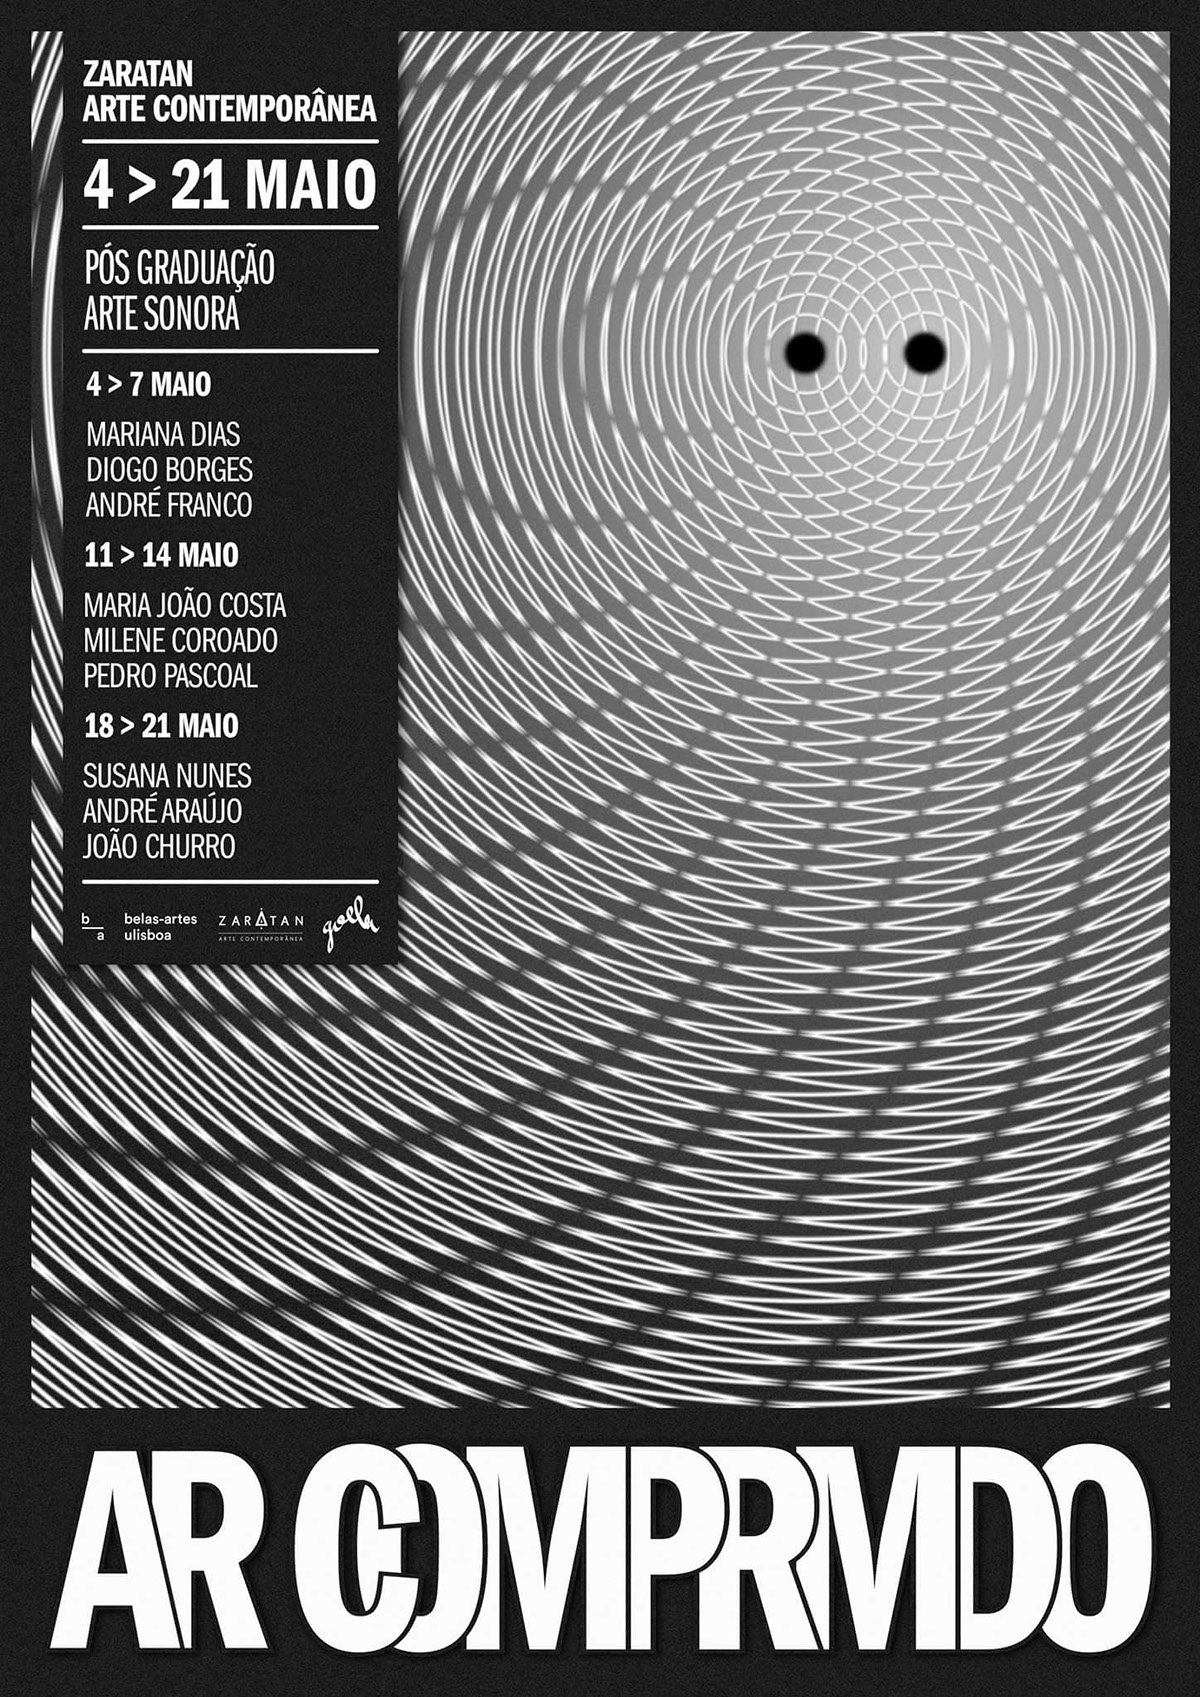 Exhibition  poster sound lisboa zaratan AR comprimido monochrome waves Soundwaves